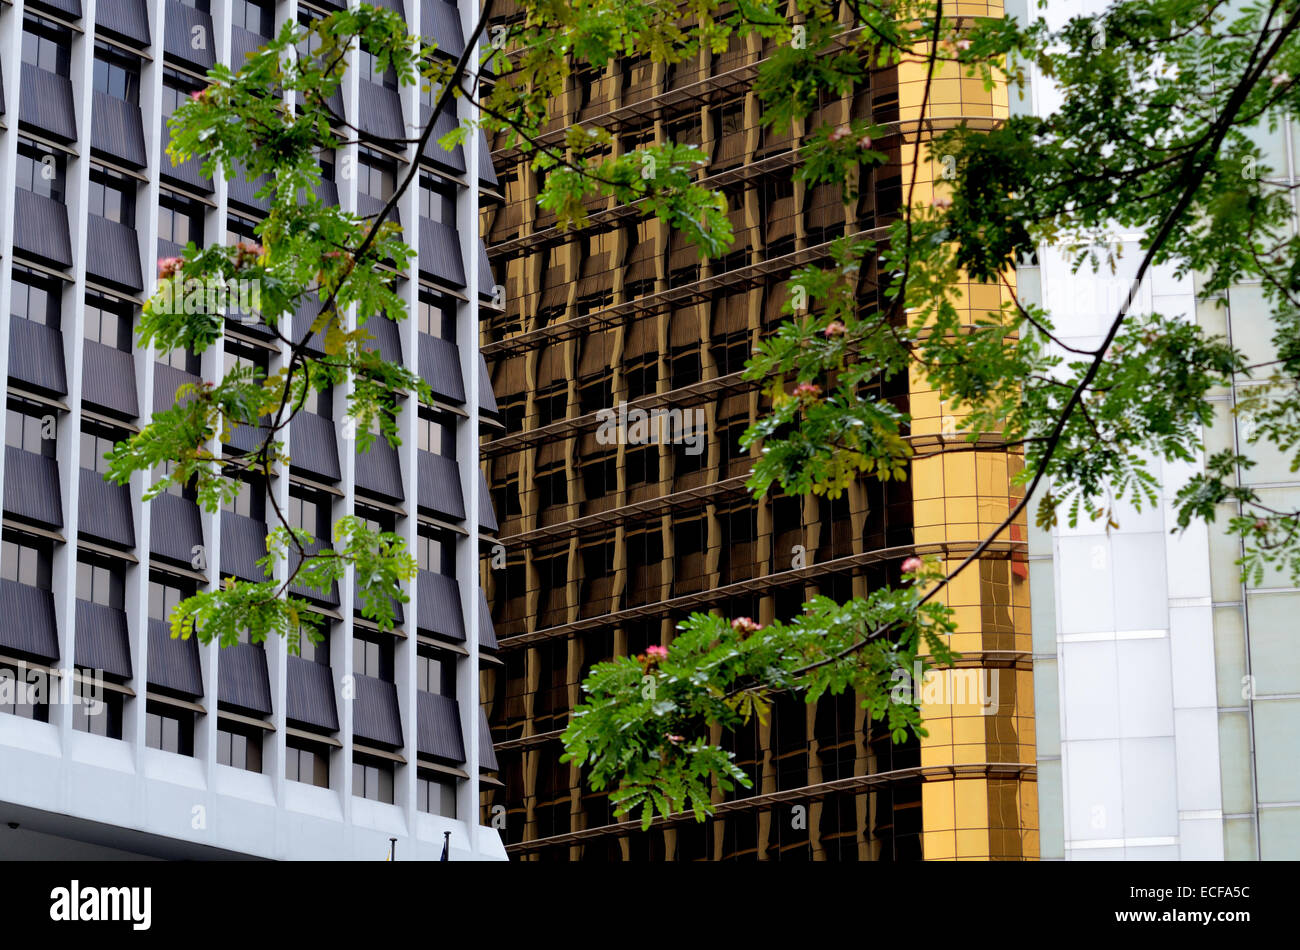 Abstrakt Architektur Fassade Und Baum Zweige Stockfotografie Alamy